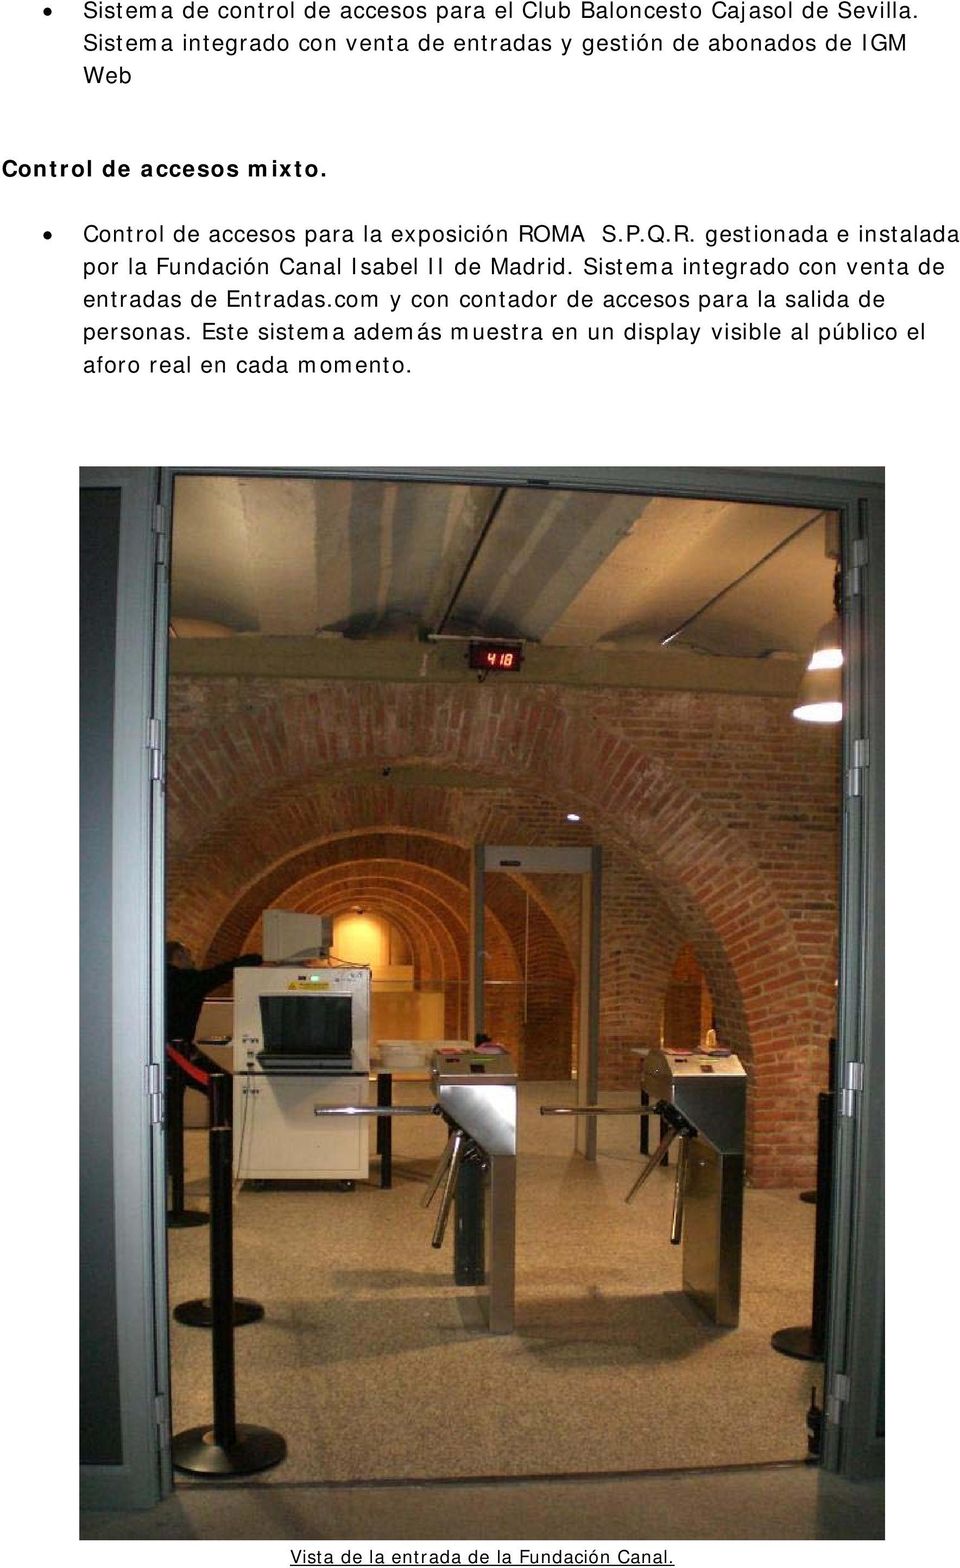 Control de accesos para la exposición ROMA S.P.Q.R. gestionada e instalada por la Fundación Canal Isabel II de Madrid.